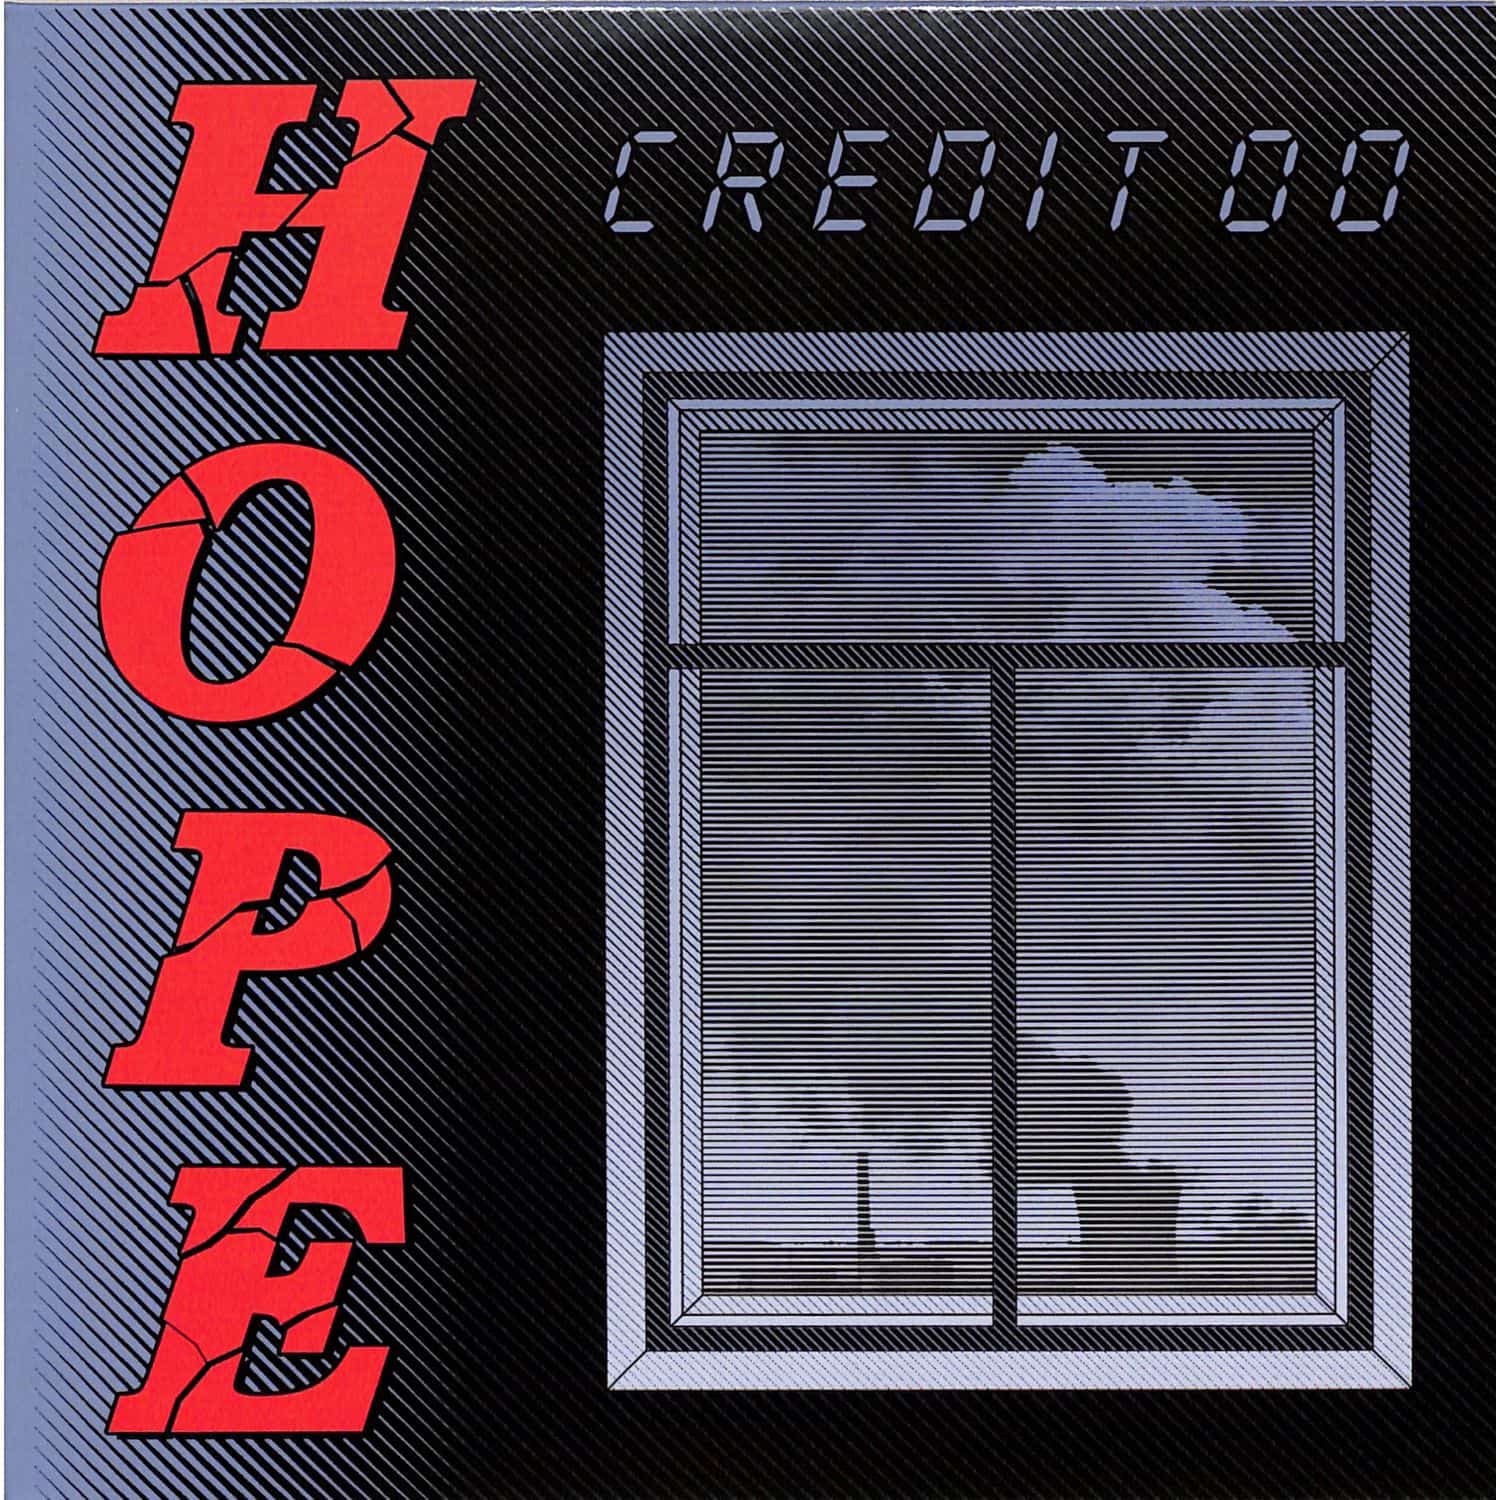 Credit 00 - HOPE 